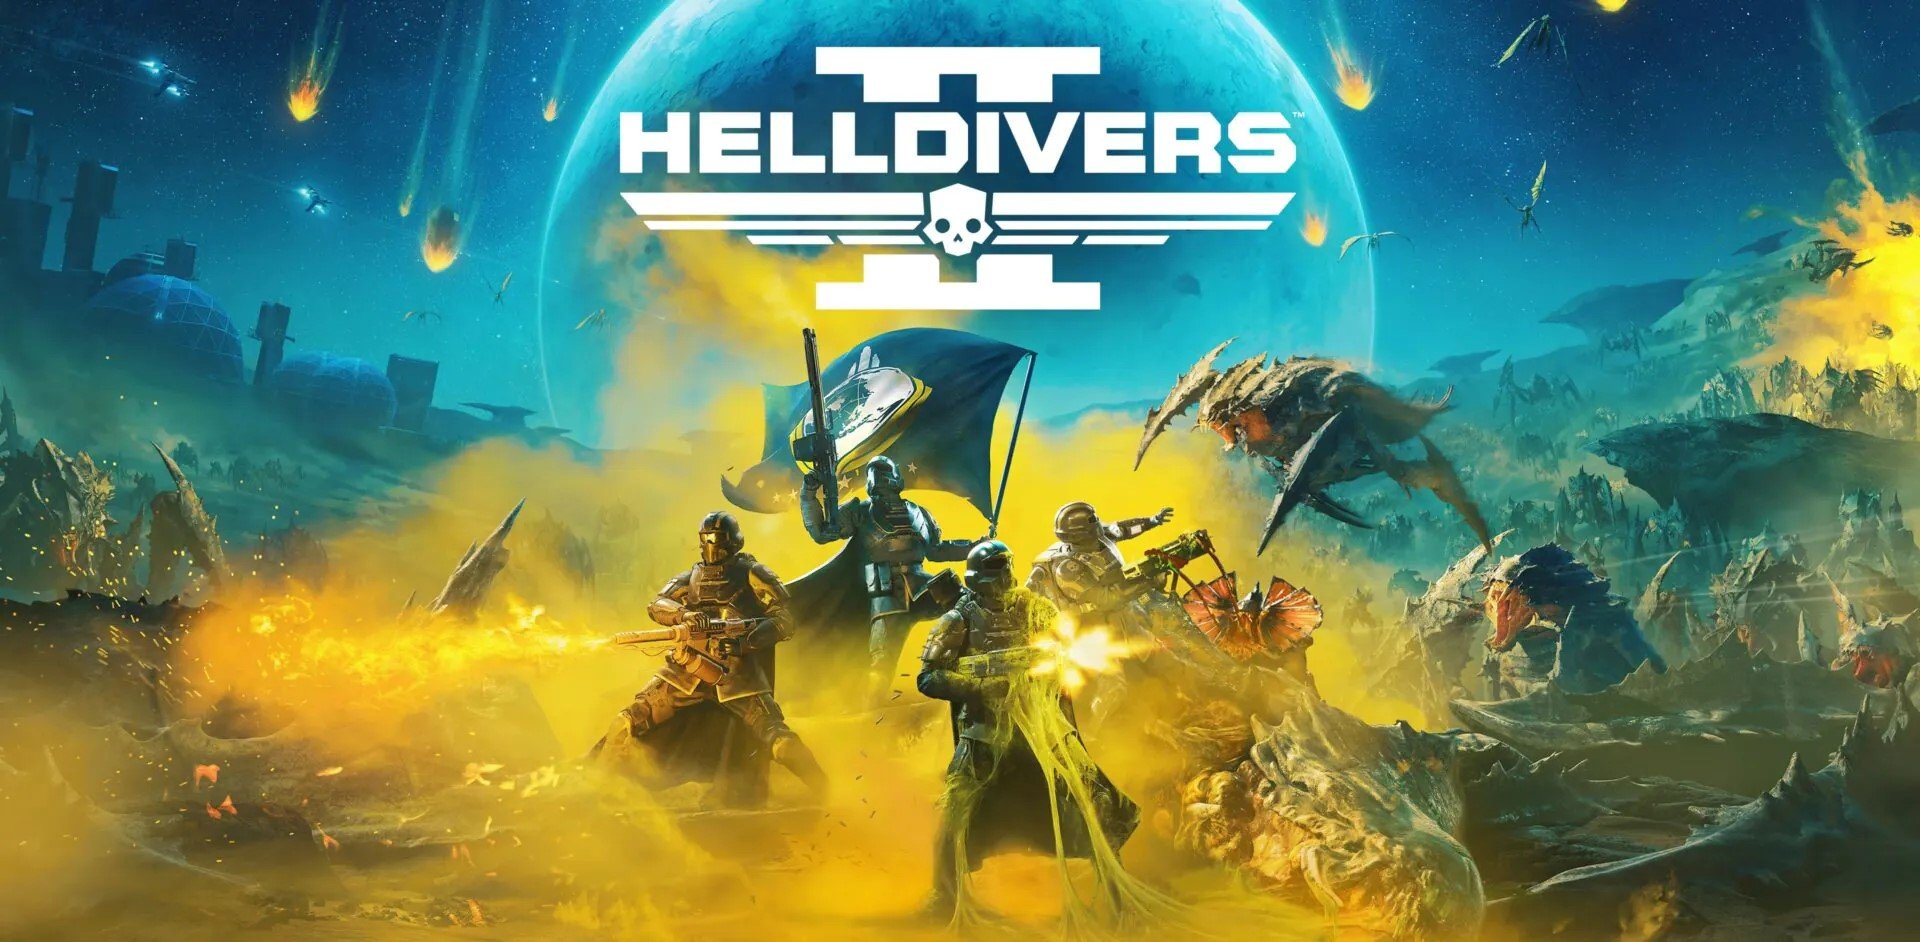 Oltre 100.000 recensioni negative per Helldivers 2